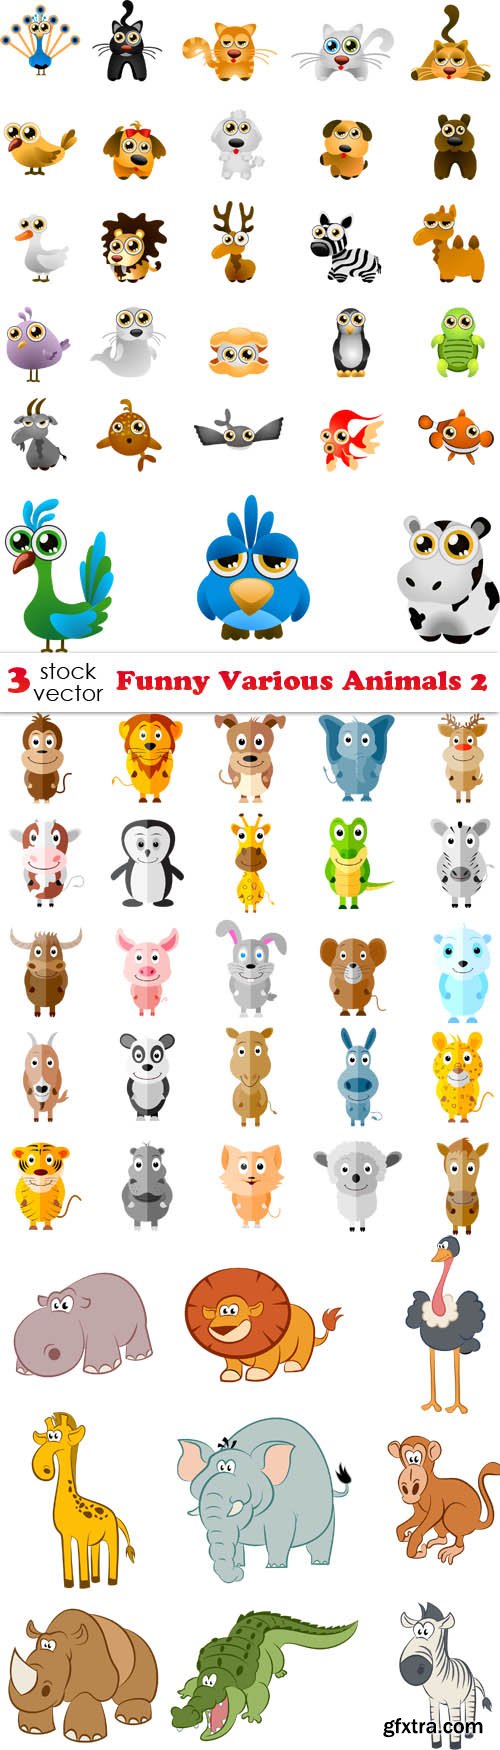 Vectors - Funny Various Animals 2